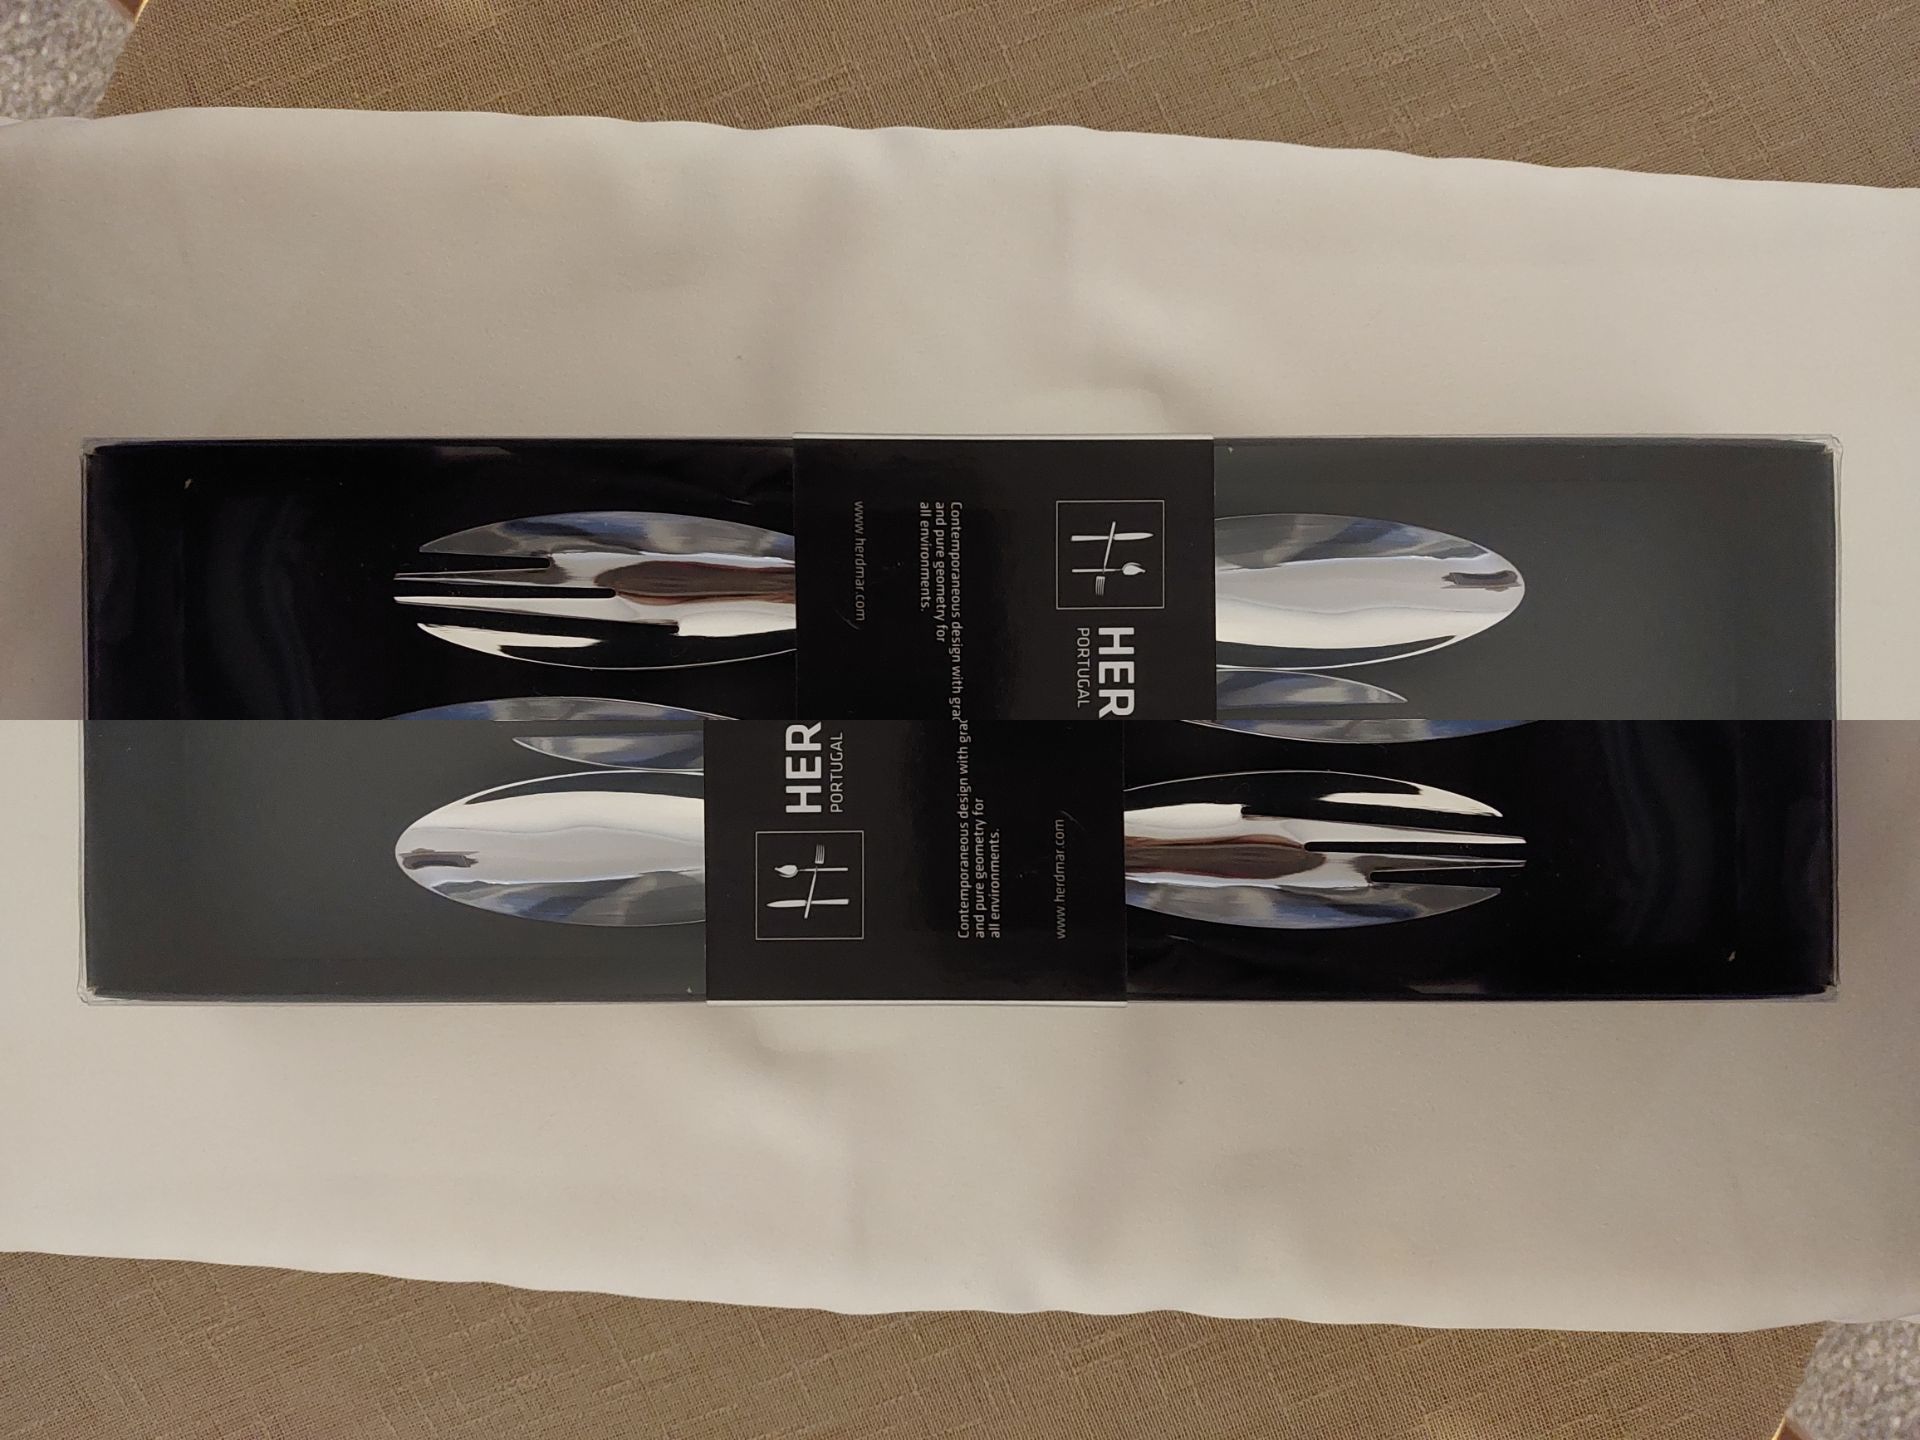 Knife/Spoon Cutlery X 24 Packs RRP £19.99 Each - Image 3 of 8